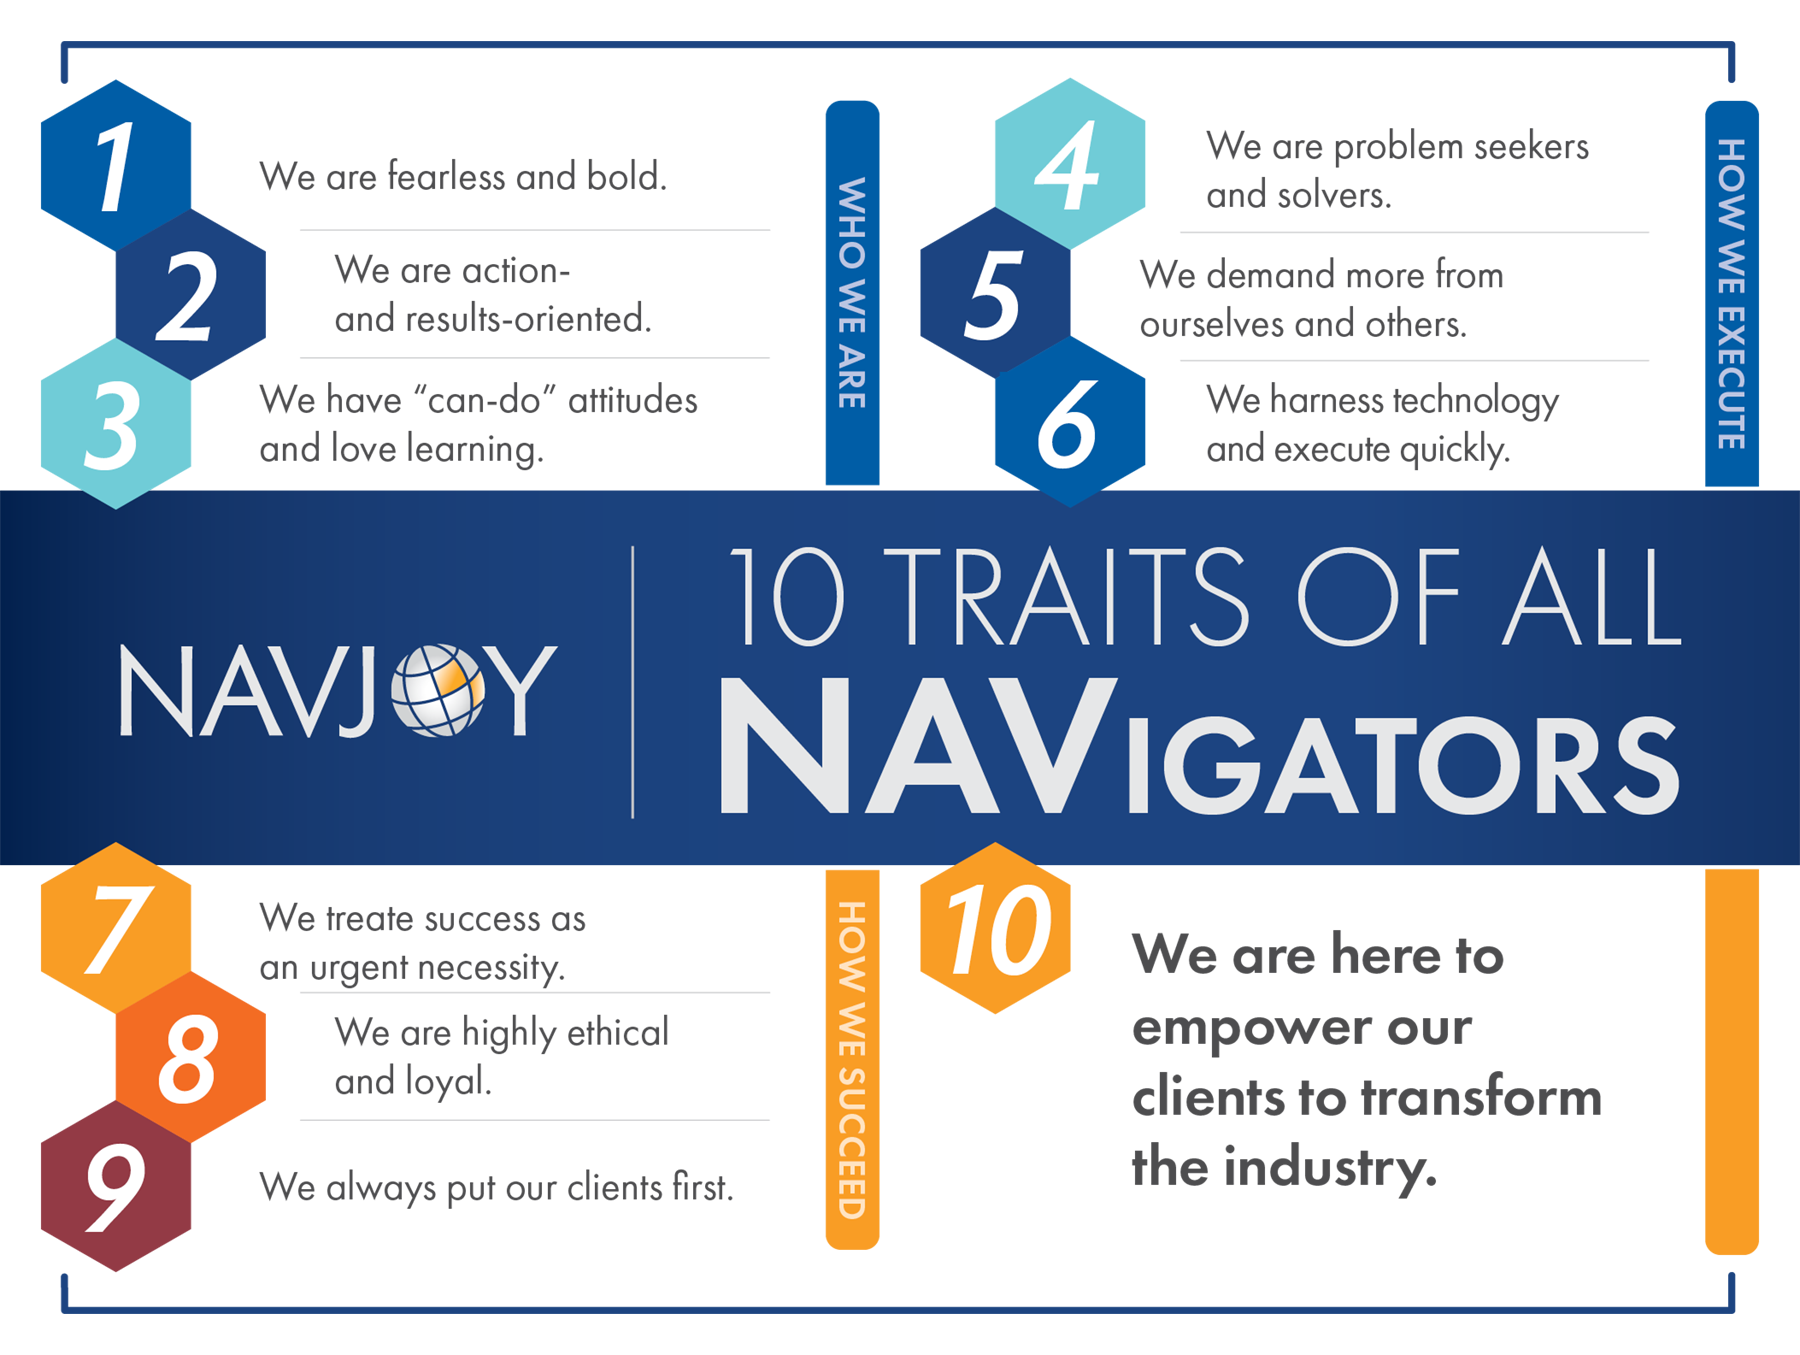 10 Traits of All NAVigators